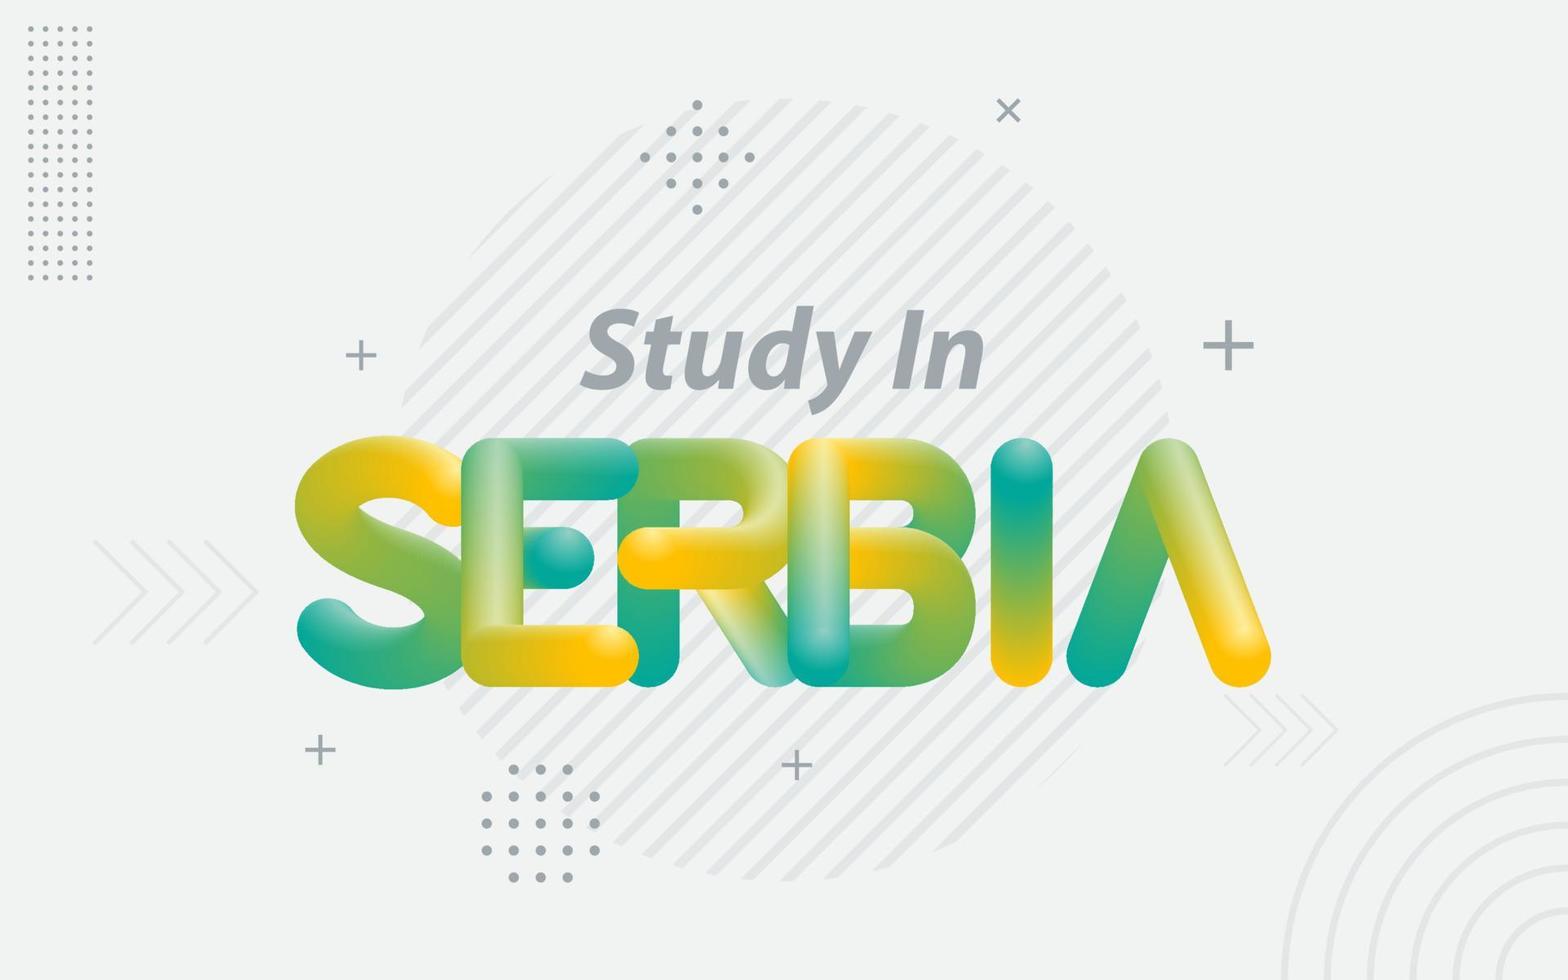 estudiar en serbia tipografía creativa con efecto de mezcla 3d vector